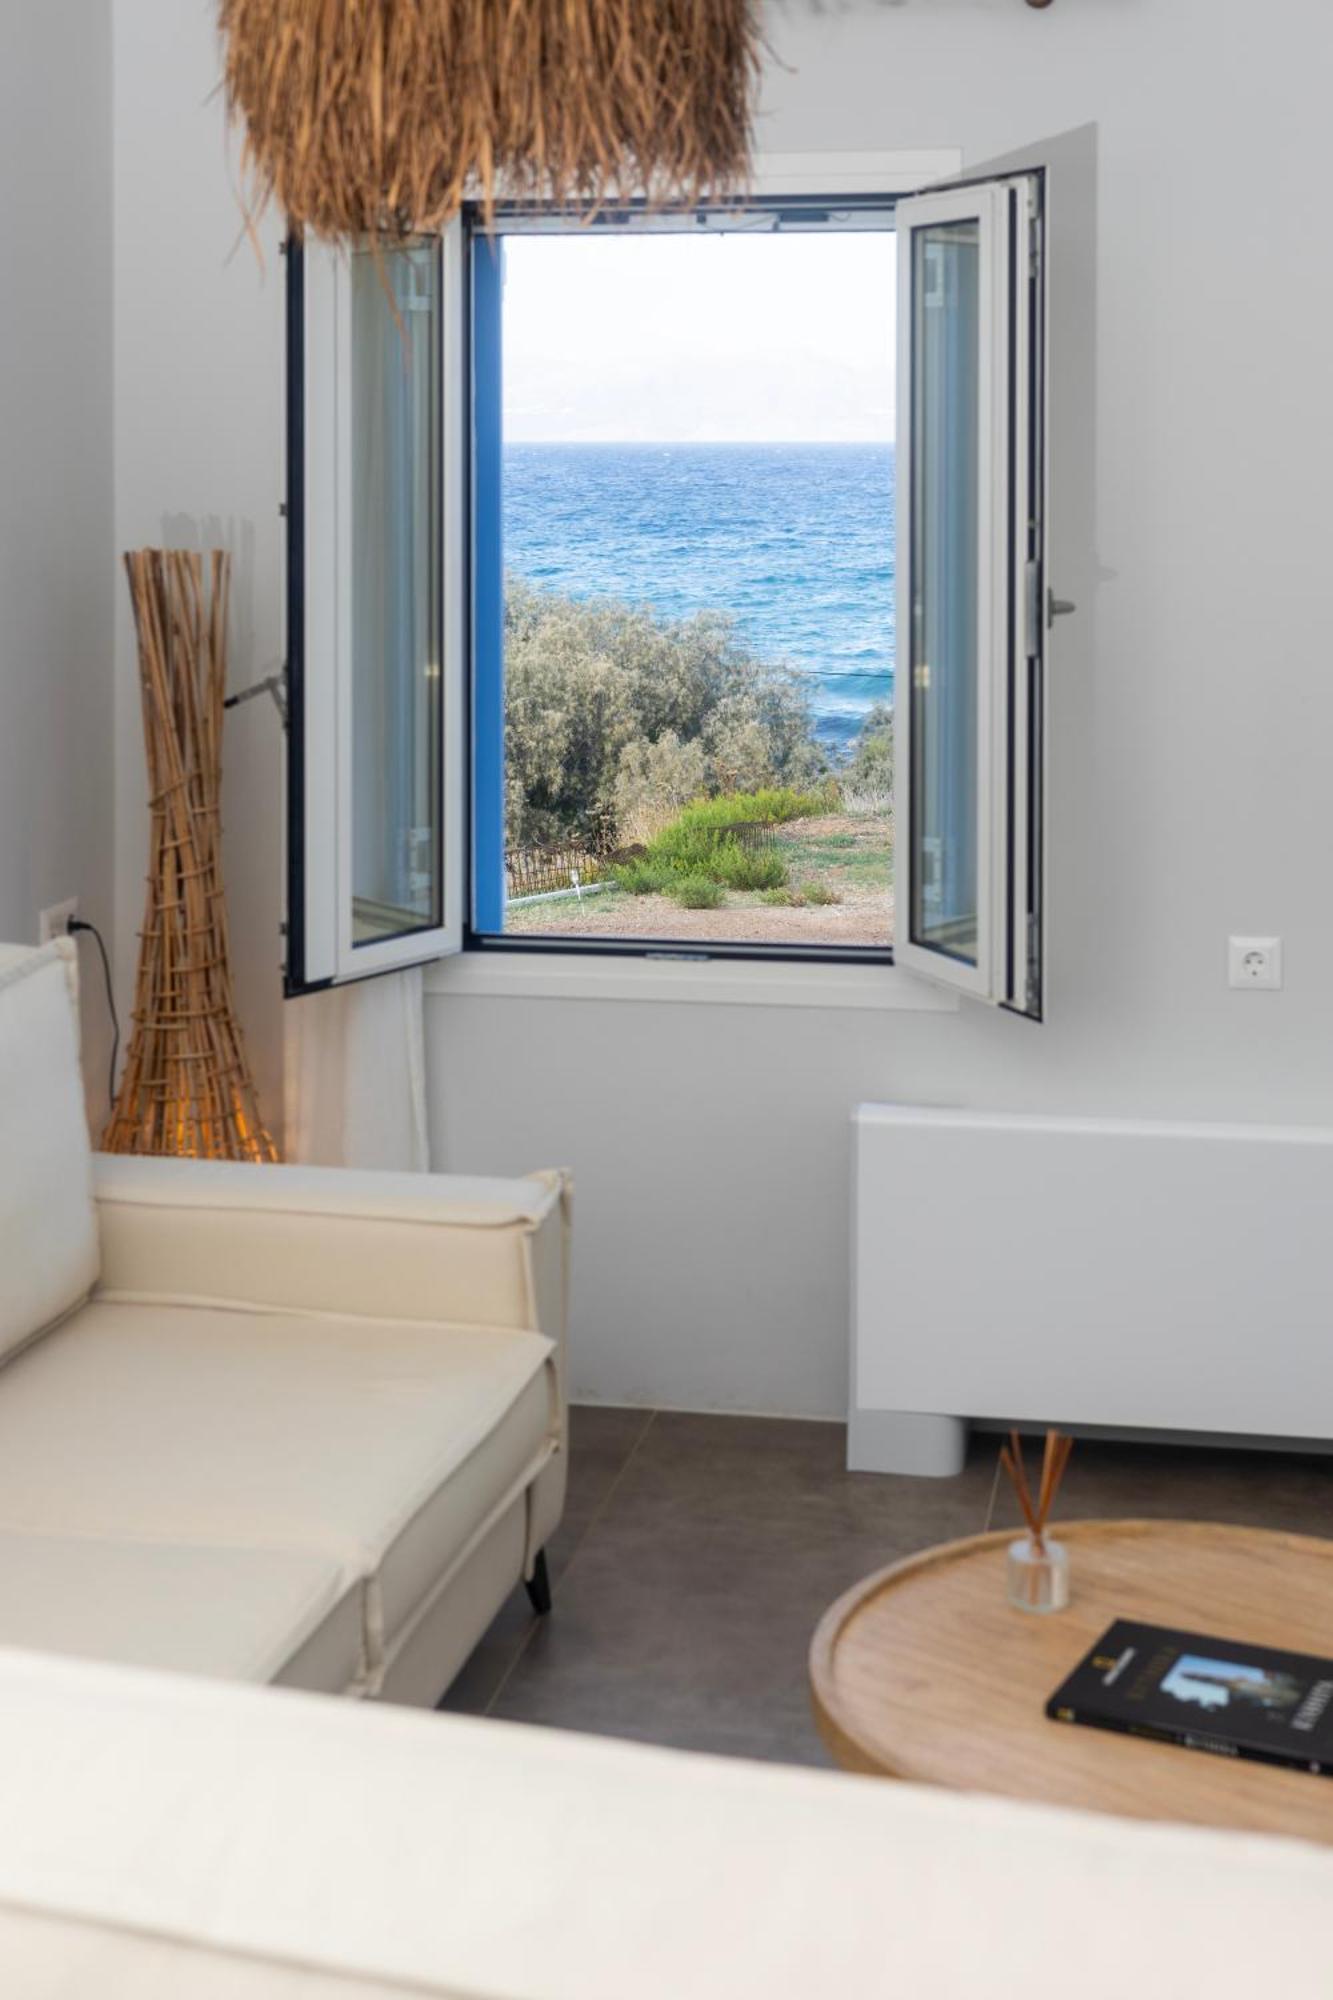 Alsea Seafront Apartments In Agia Pelagia Kythera 外观 照片